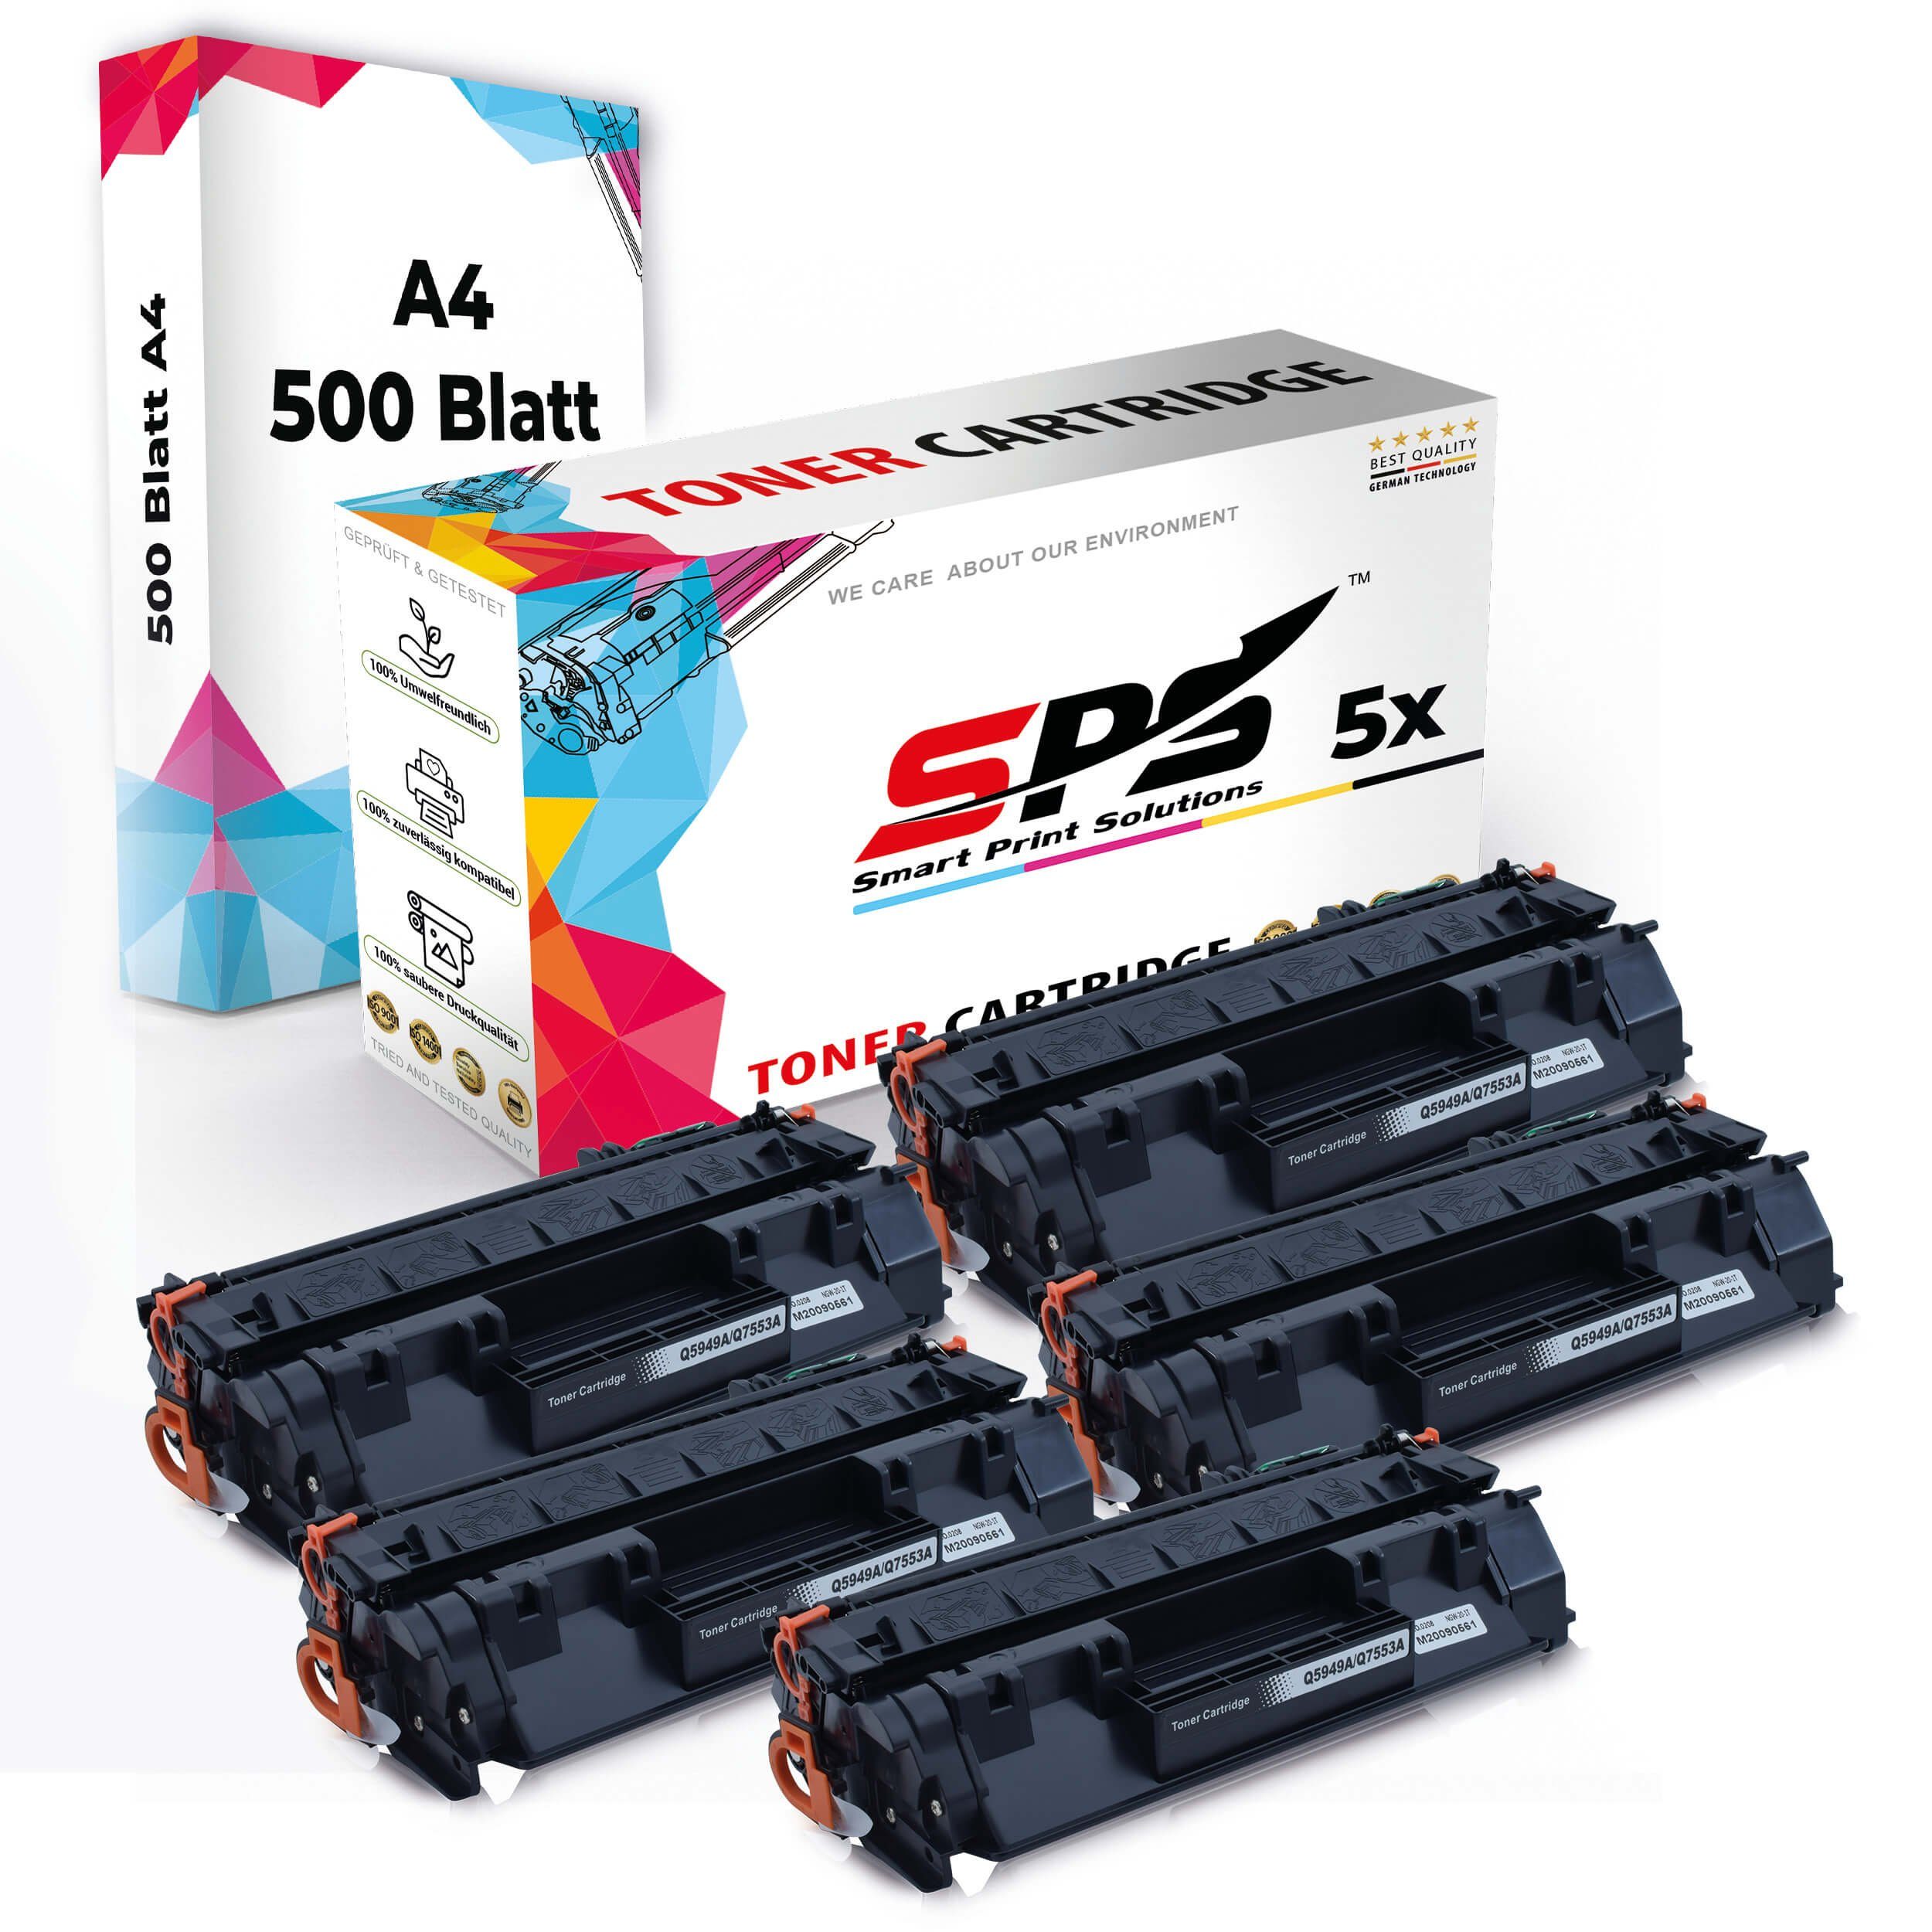 5x Toner,1x A4 A4 Druckerpapier) Pack, Multipack + Druckerpapier Tonerkartusche Kompatibel, SPS 5x (6er Set